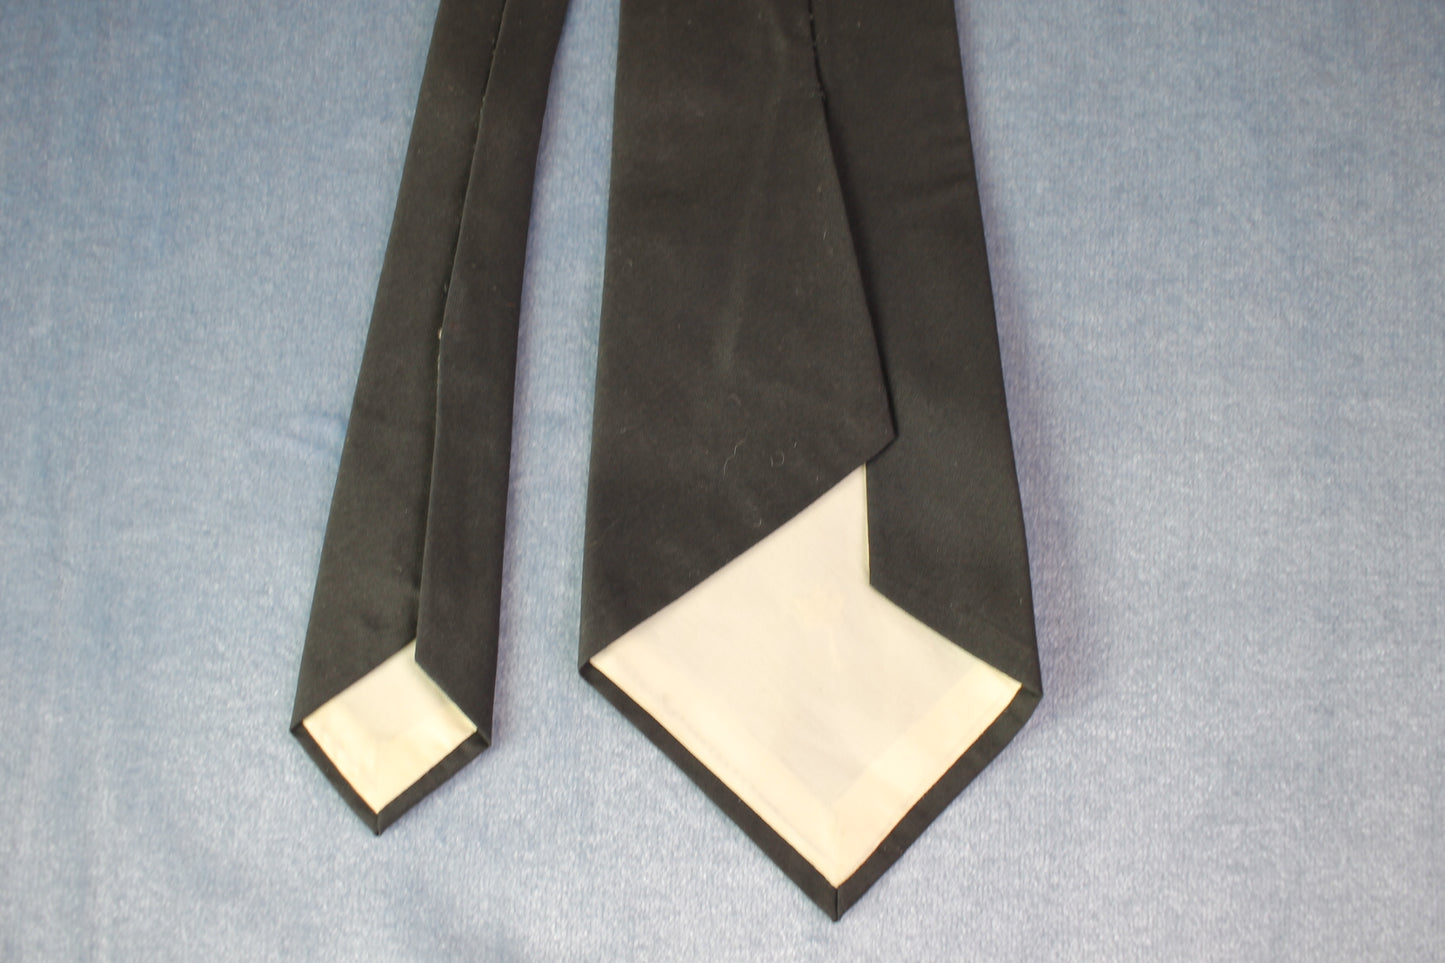 Vintage 1950s/60s black embroidered crown tie